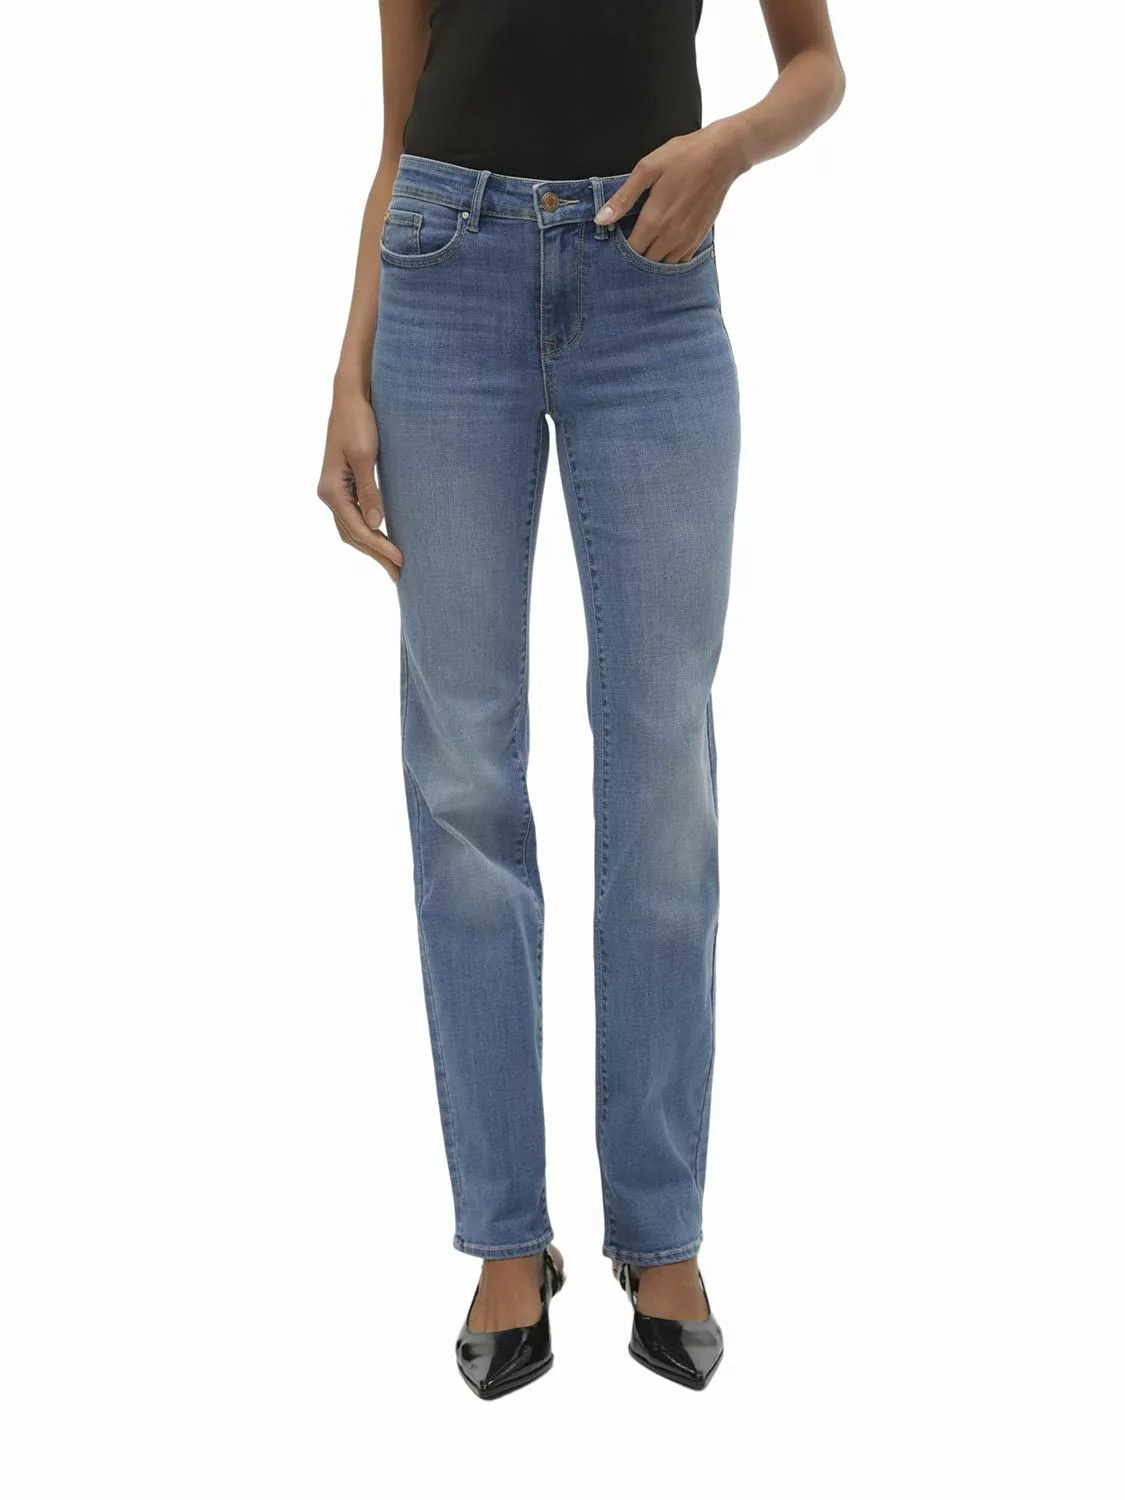 Vero Moda Damen Jeans VMFLASH MR STRAIGHT LI347 GA Straigt Fit - Blau - Med günstig online kaufen